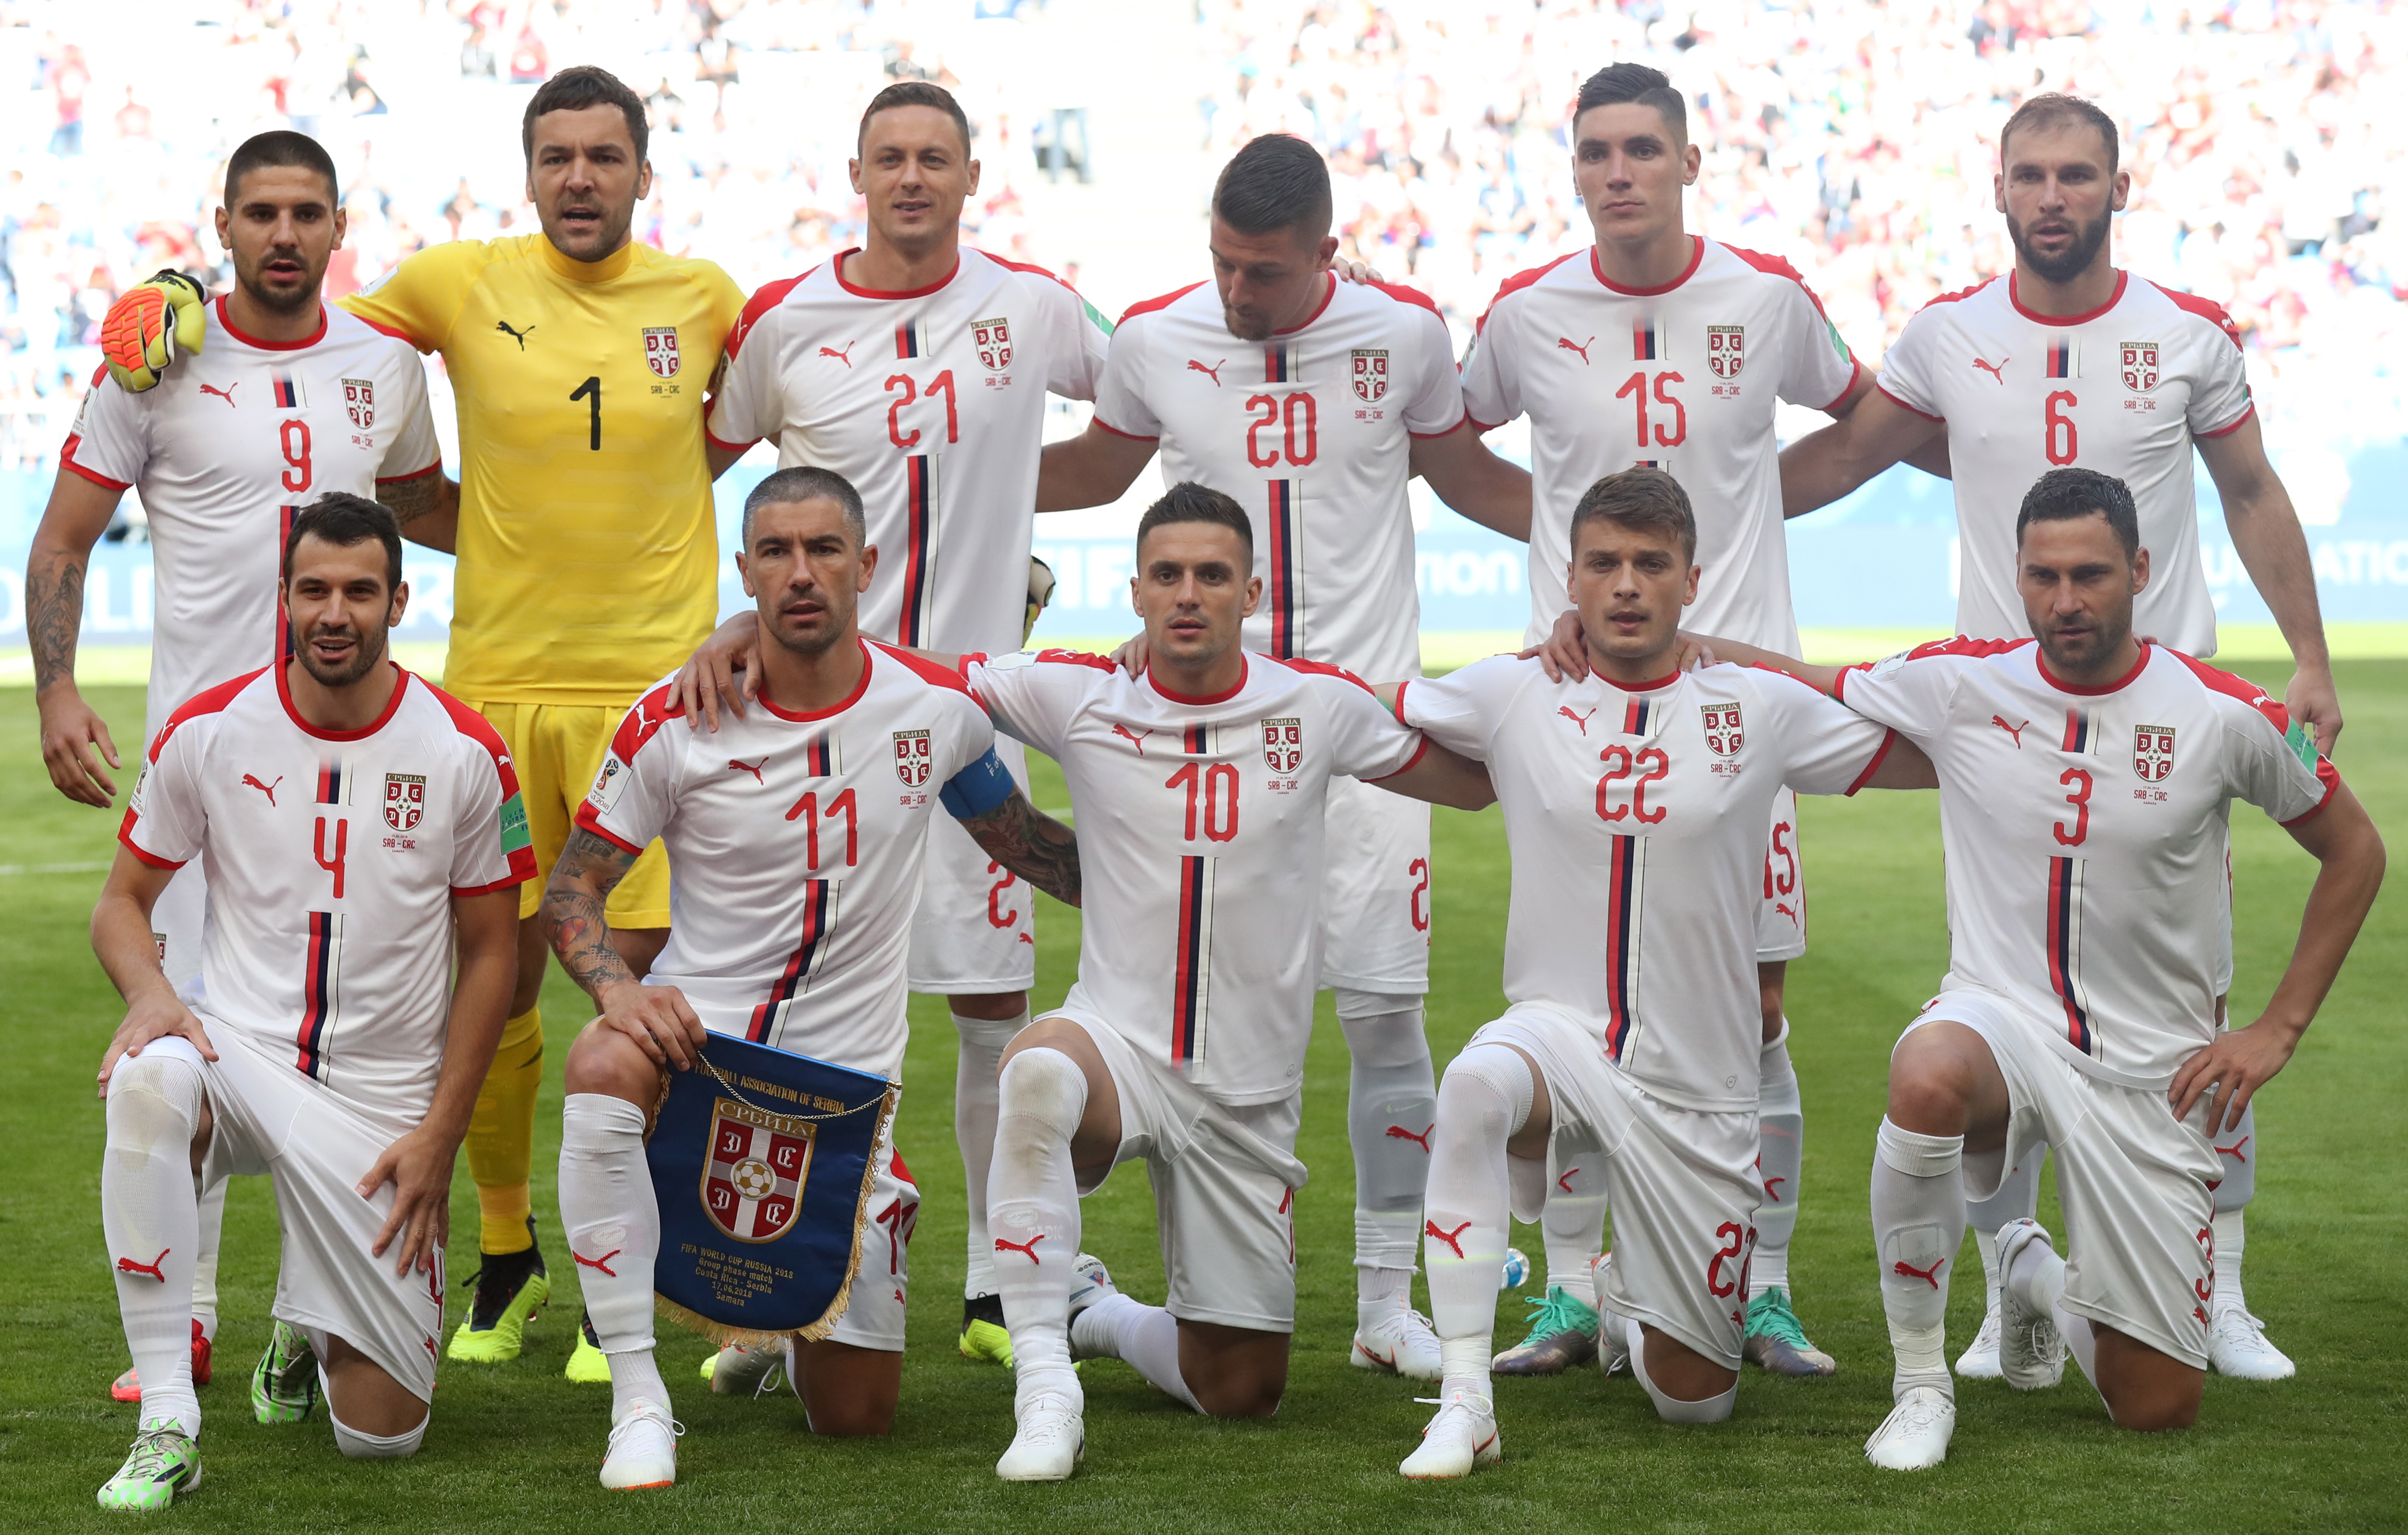 Kadra Serbii na Mundial 2018: skład reprezentacji na MŚ w piłce nożnej -  Mundial 2018